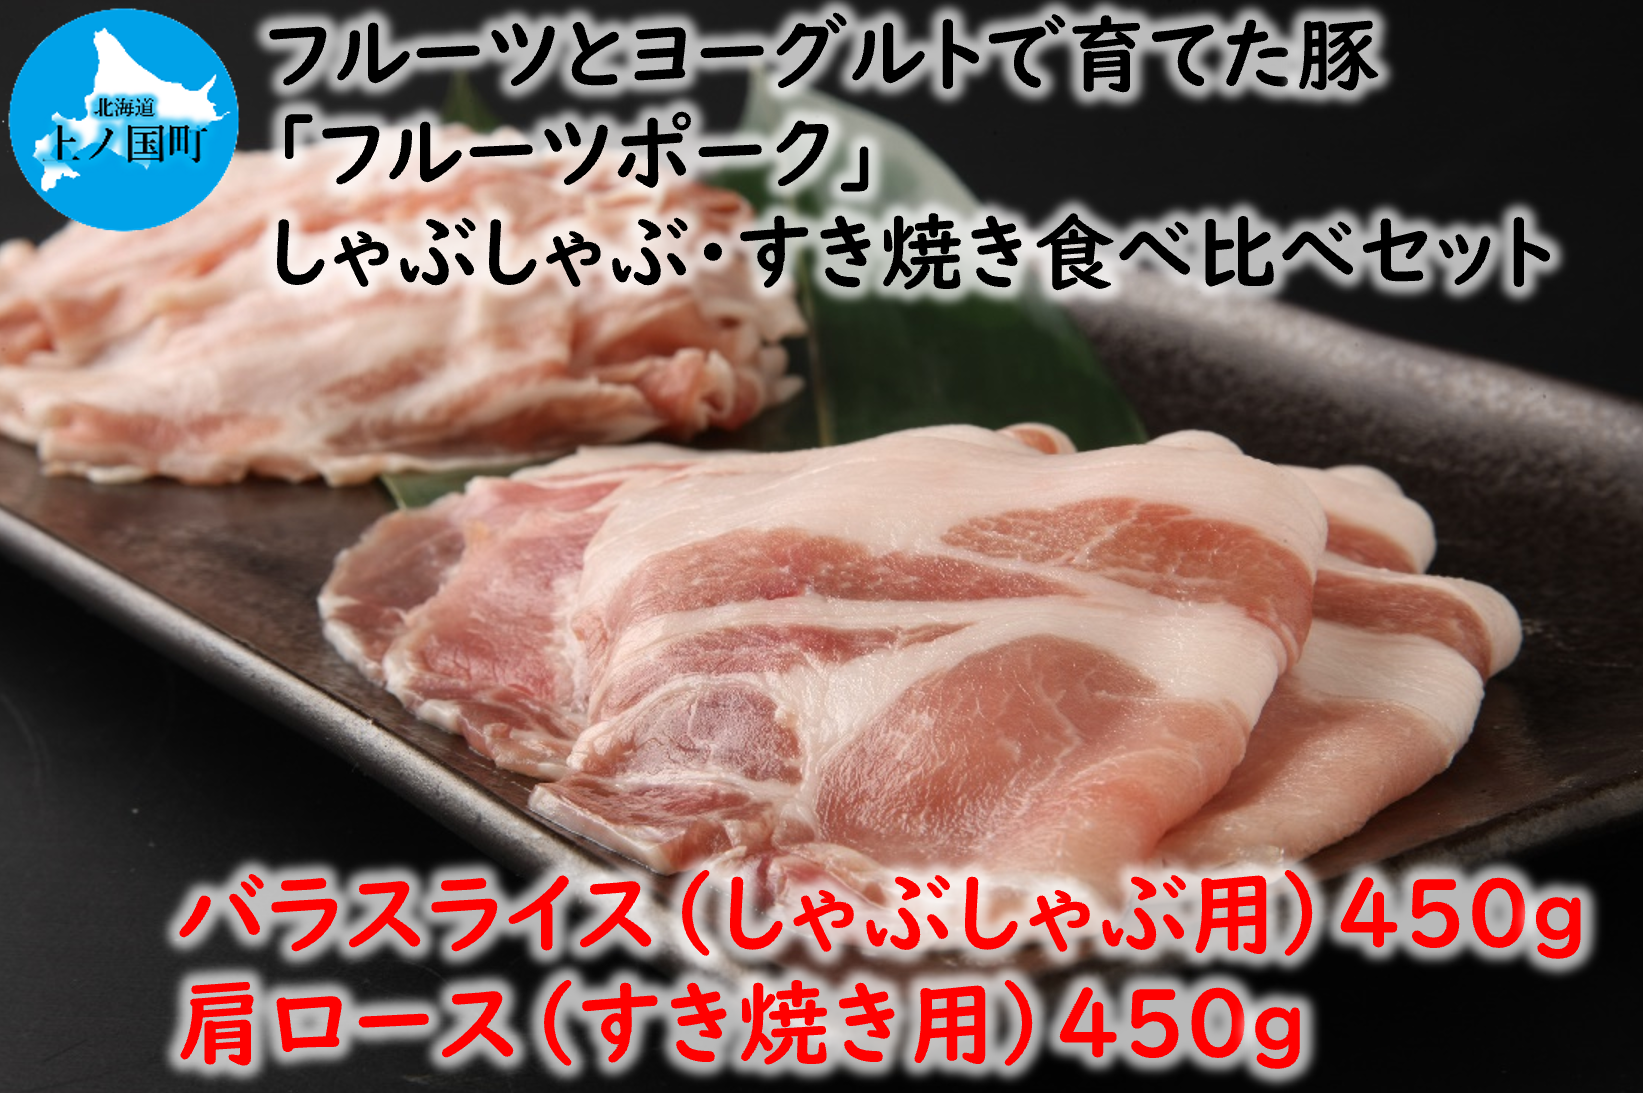 北海道産 上ノ国町 フルーツポークのしゃぶしゃぶ&すきやき食べ比べセット(各450g)